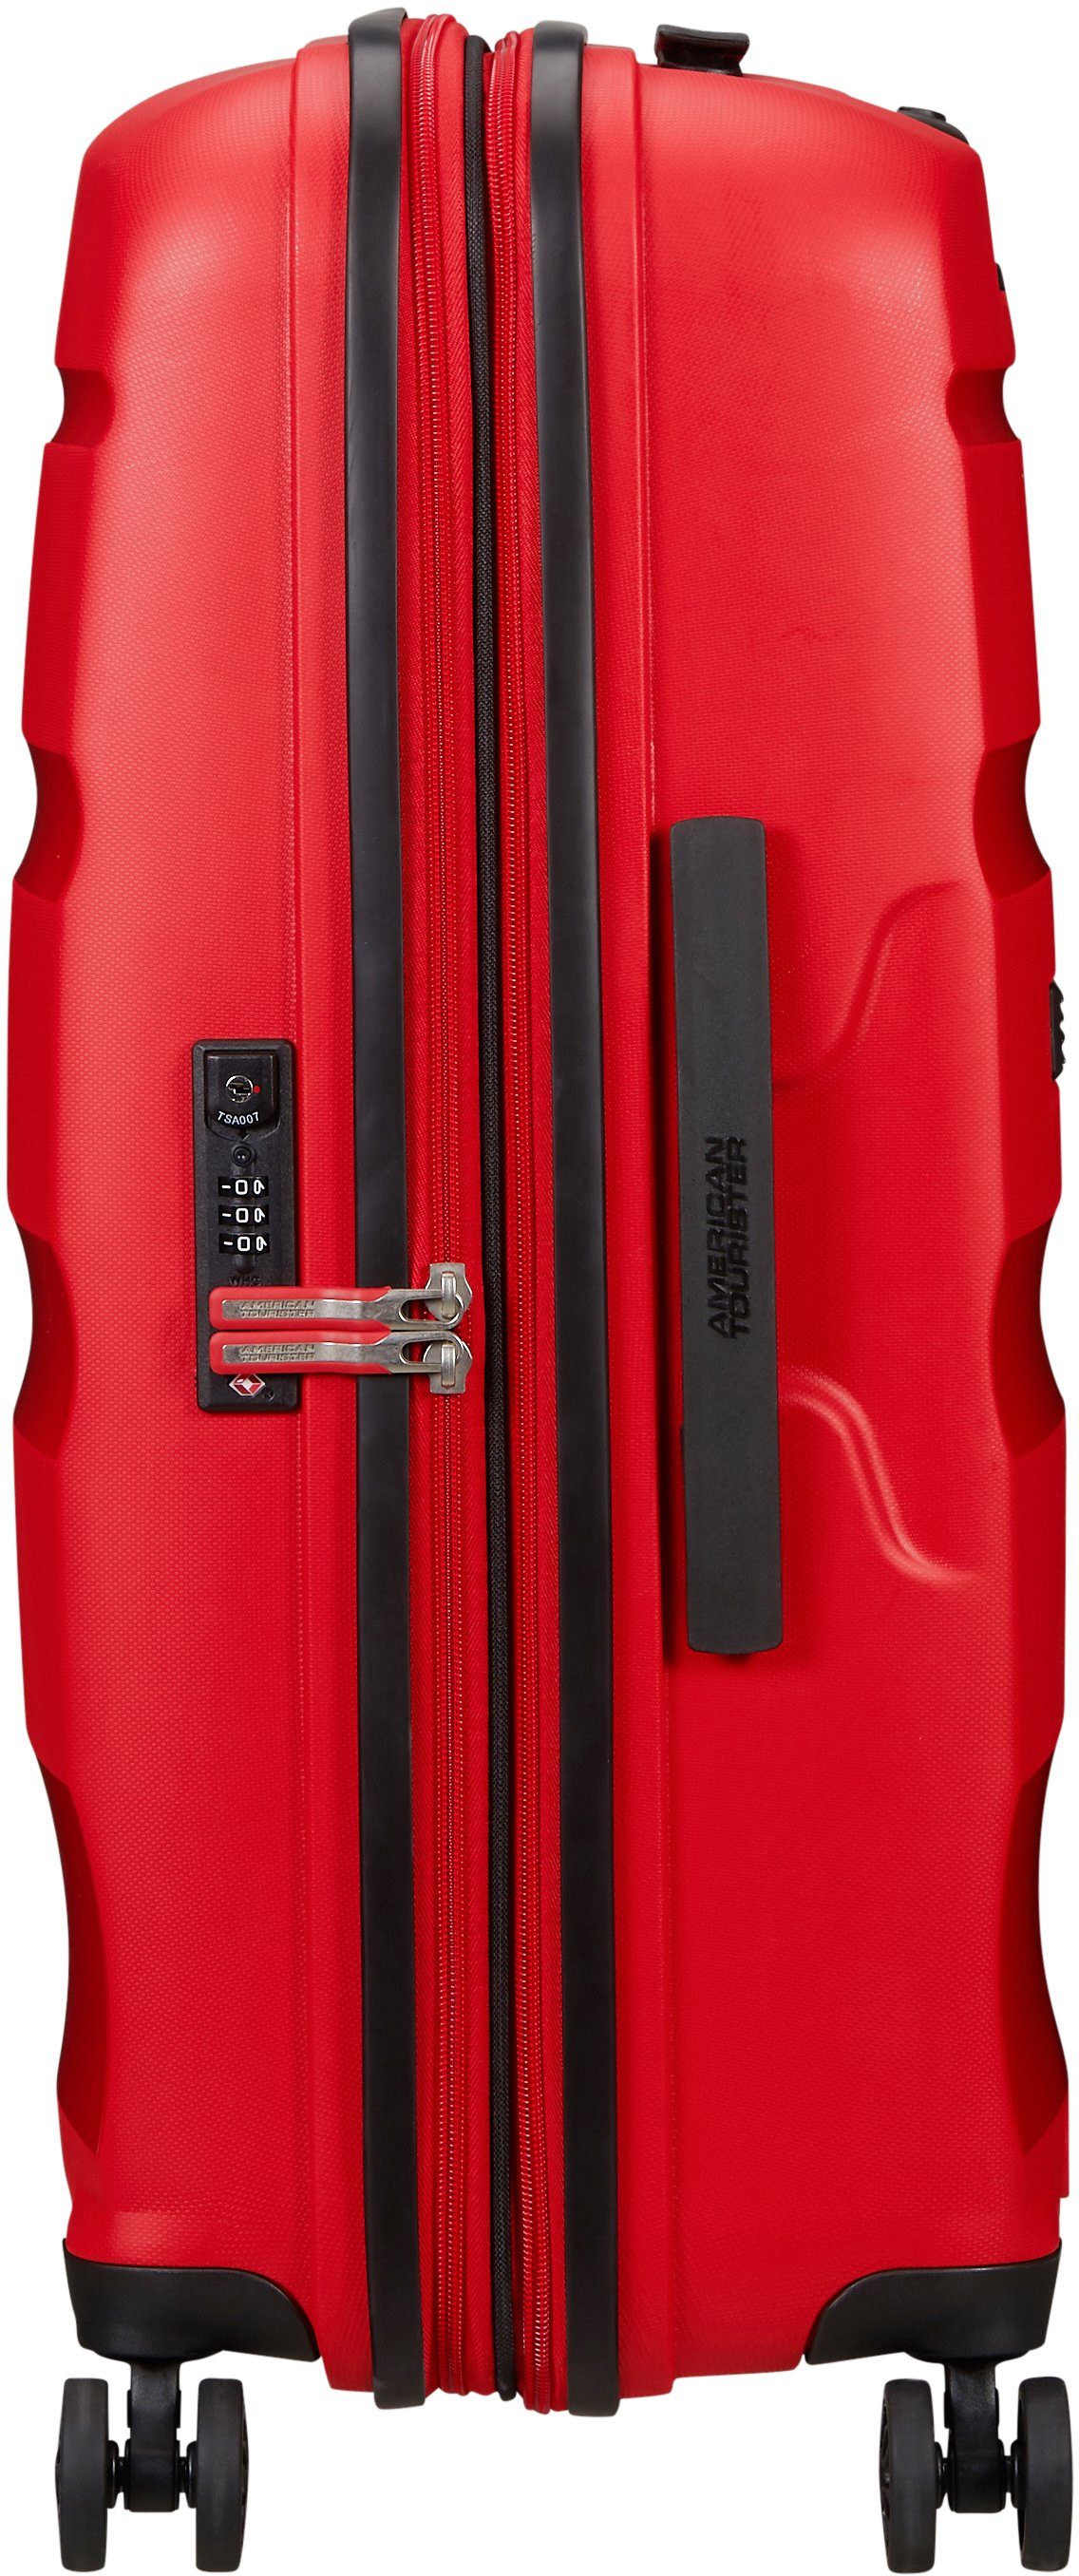 66 American Volumenerweiterung Hartschalen-Trolley Bon Red 4 DLX, mit Magma Rollen, cm, Tourister® Air